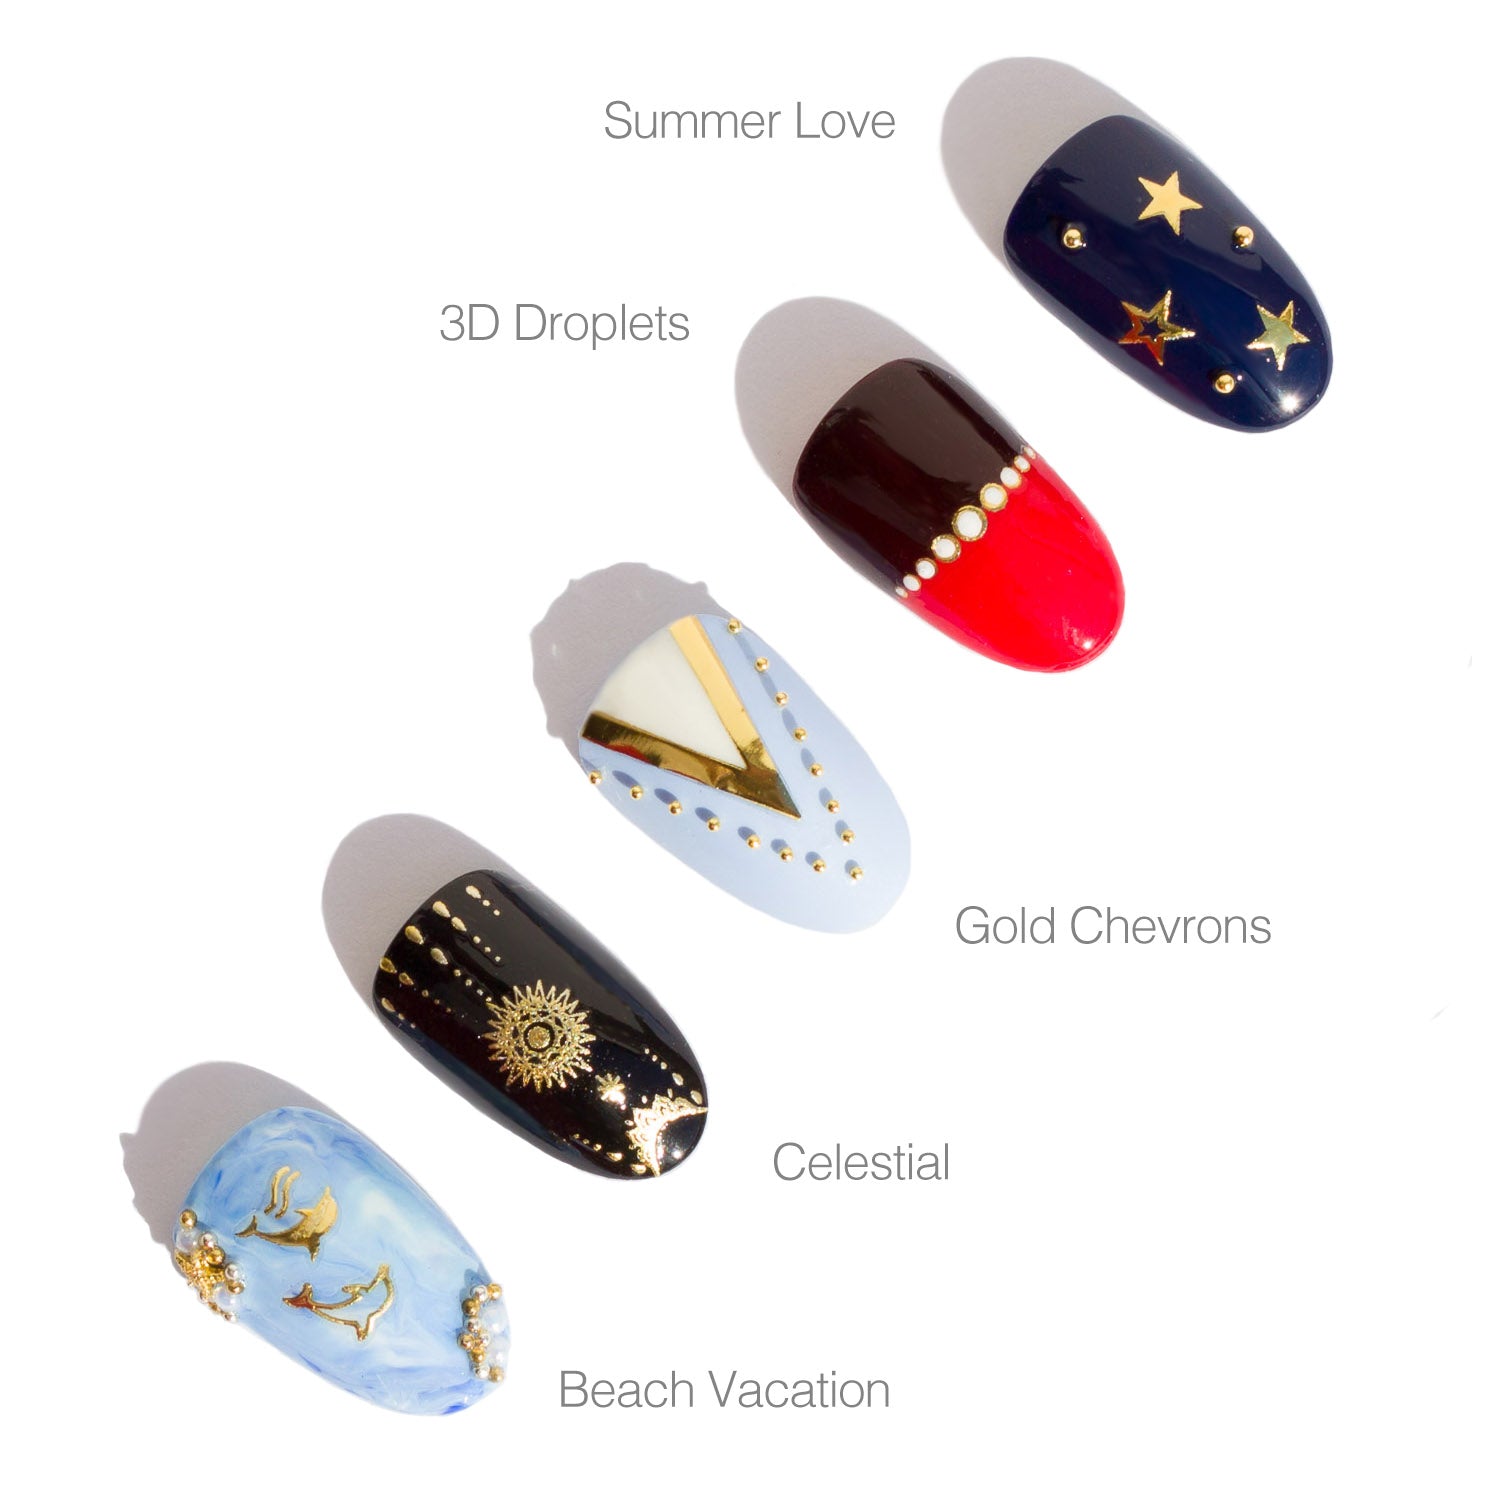 Holiday nail art, gold nail foil - SoNailicious